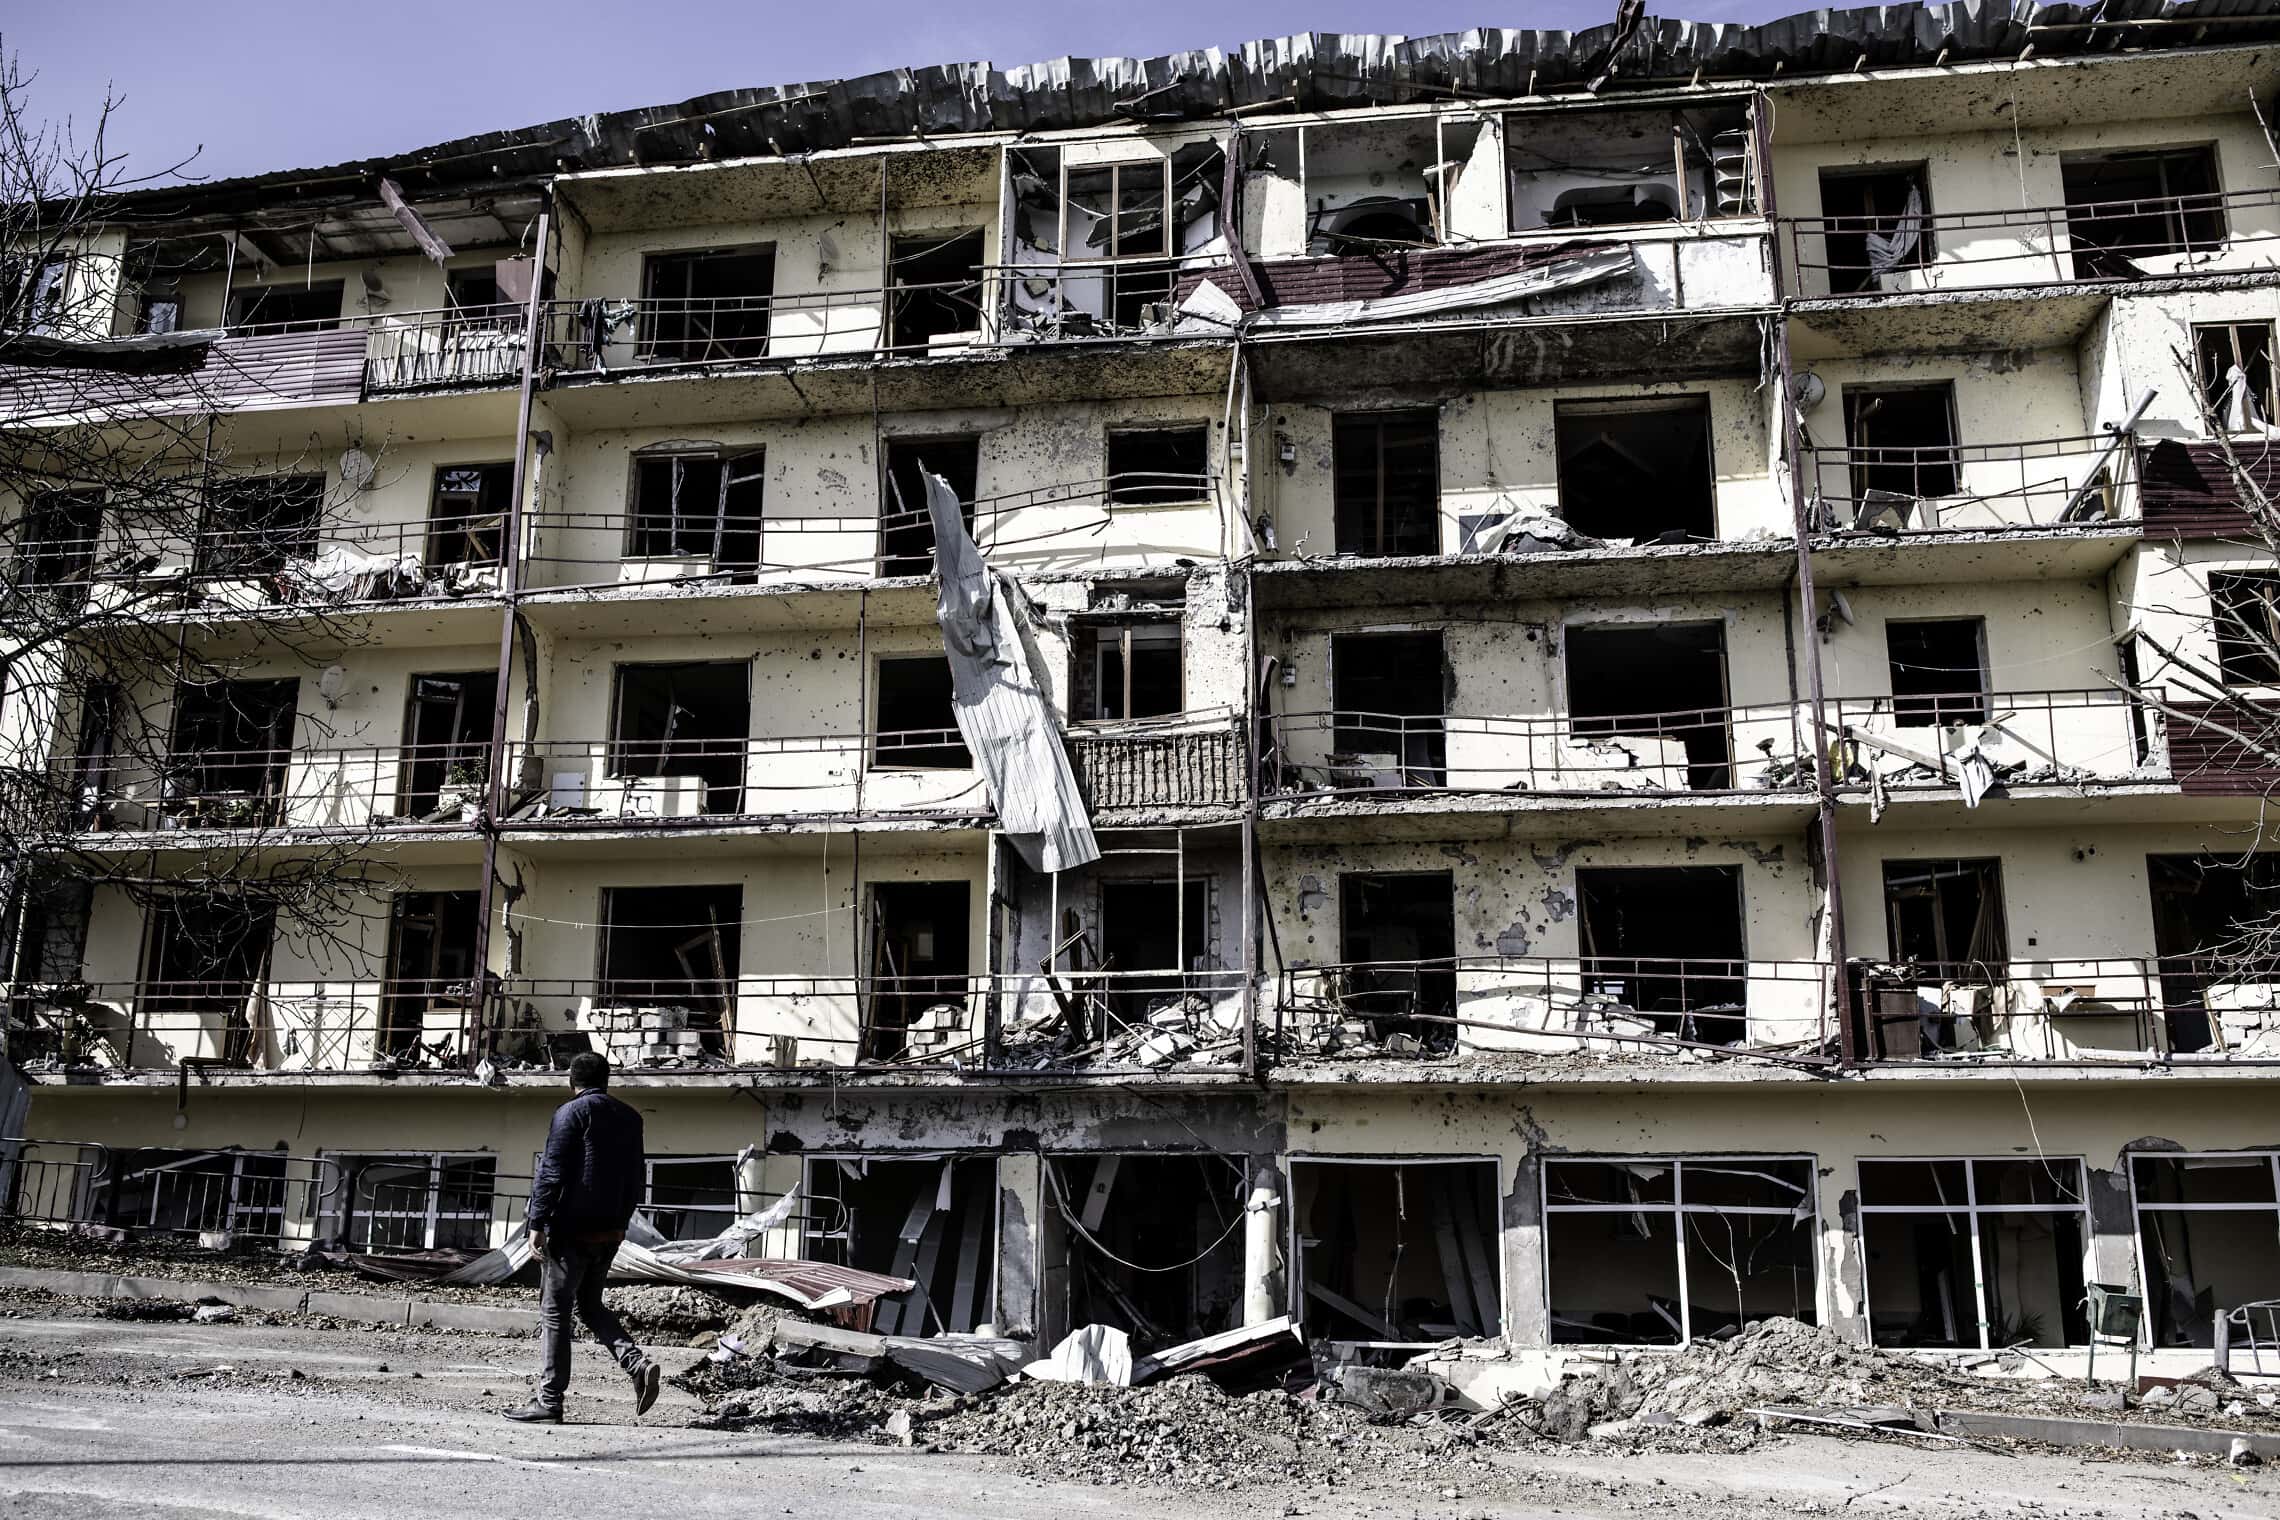 ארמני מנגורנו קרבאך הולך לצד בניין מגורים שהופגז על ידי אזרבייג&#039;ן בשושה, סוף אוקטובר 2020 (צילום: גילעד שדה)